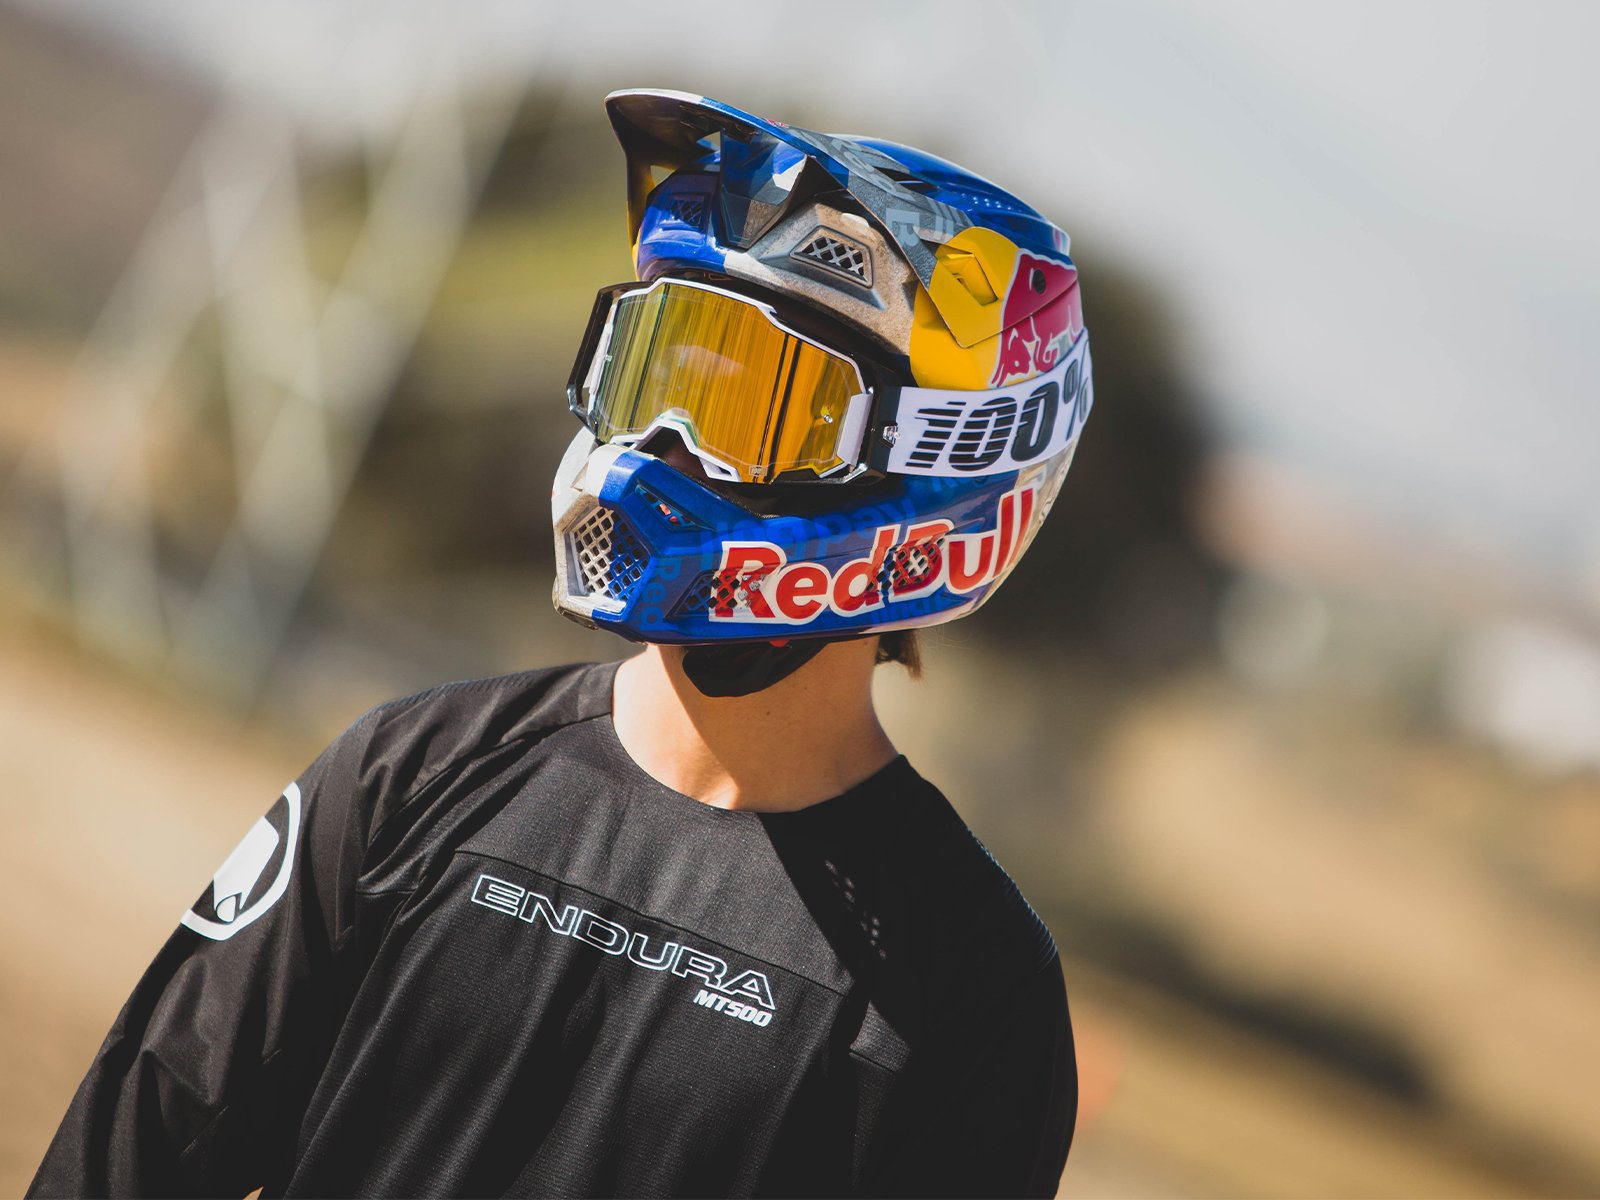 Juan Diego Salido wearing Red Bull helmet